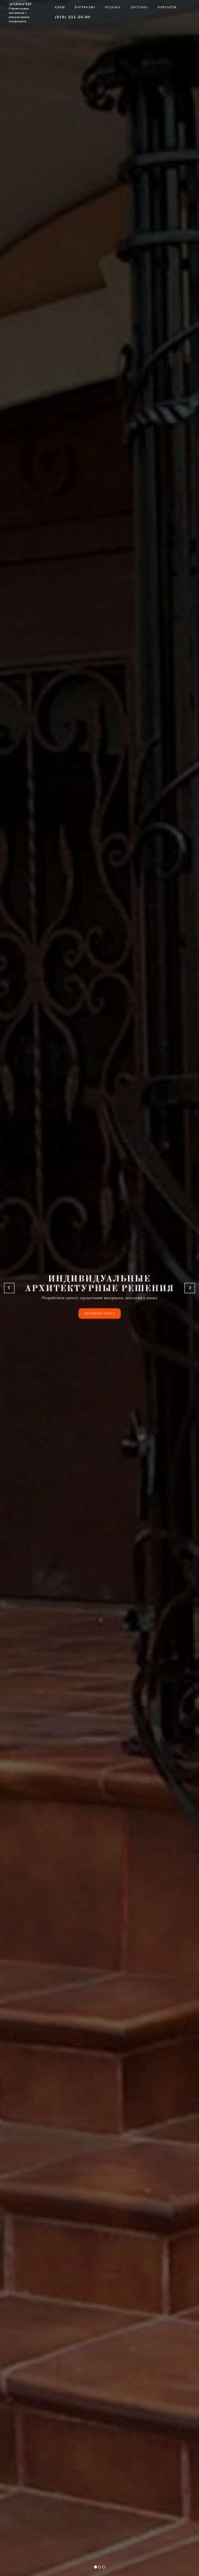 Предпросмотр для www.arhimaster48.ru — Архимастер